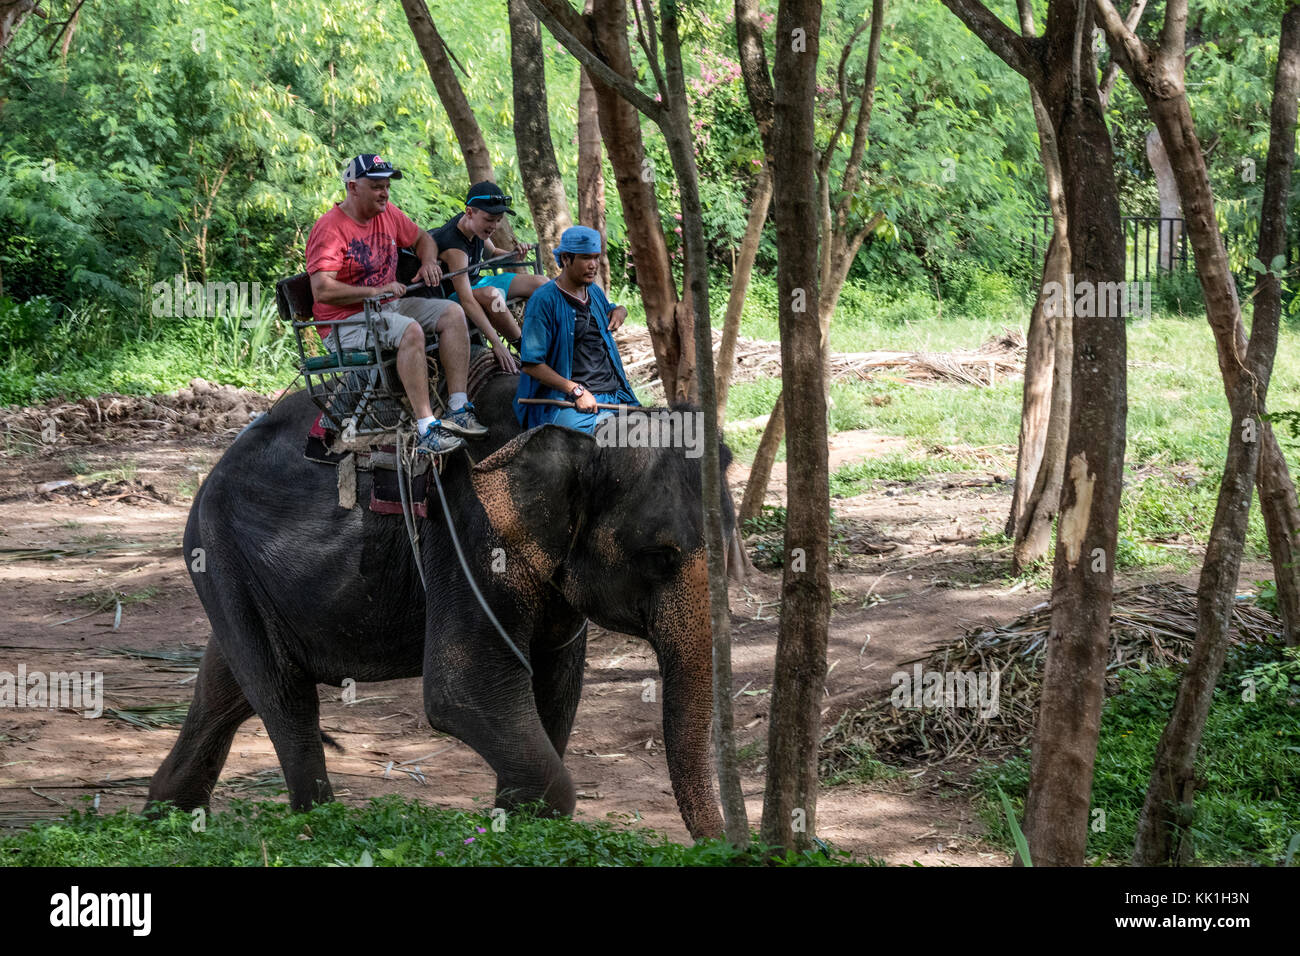 Elefante de Safari en Koh Samui, Tailandia Foto de stock